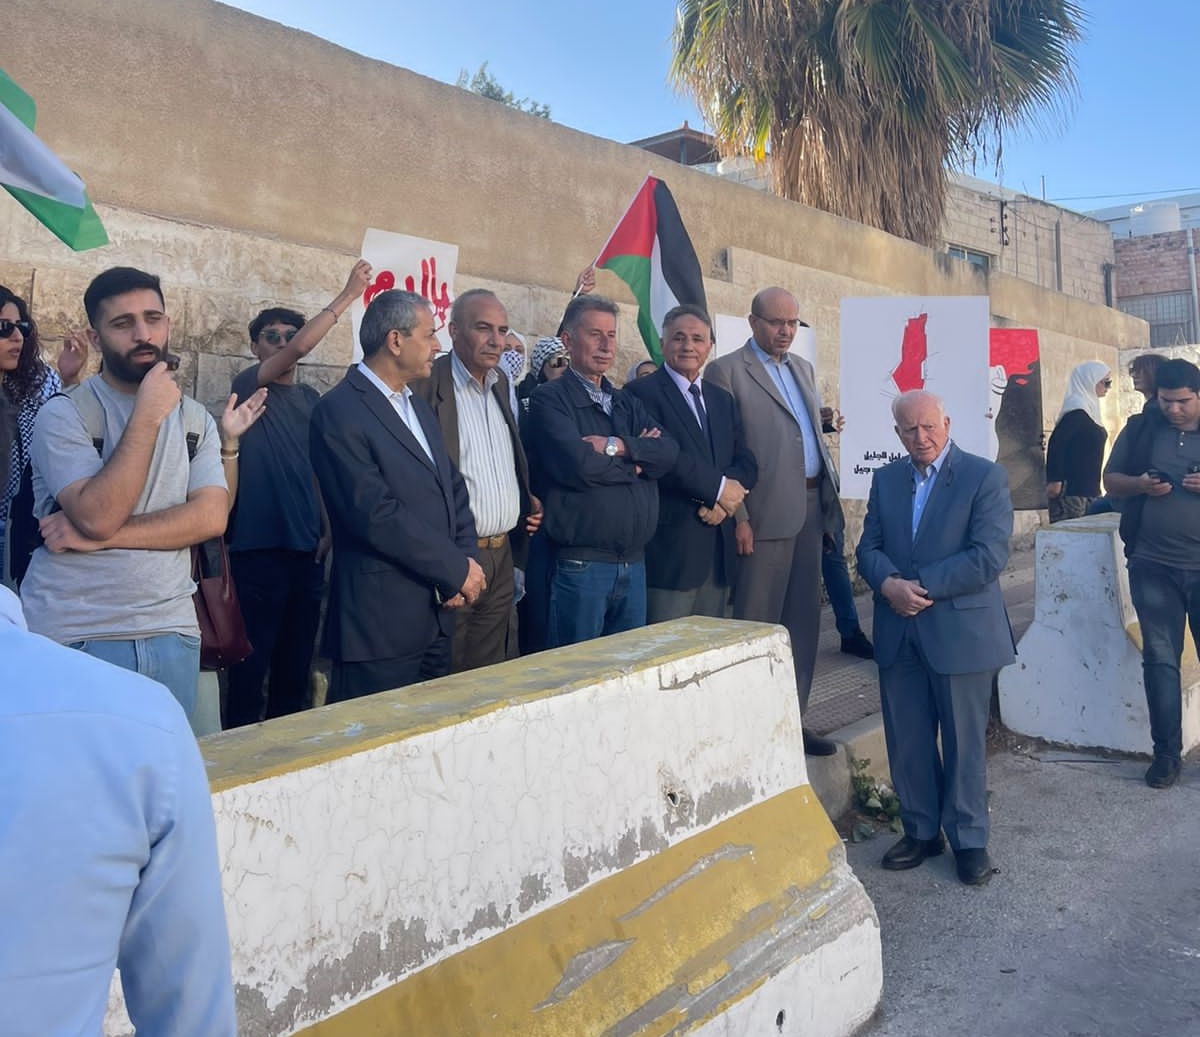 وقفة احتجاجية على جرائم الاحتلال امام مقر الامم المتحدة في عمان